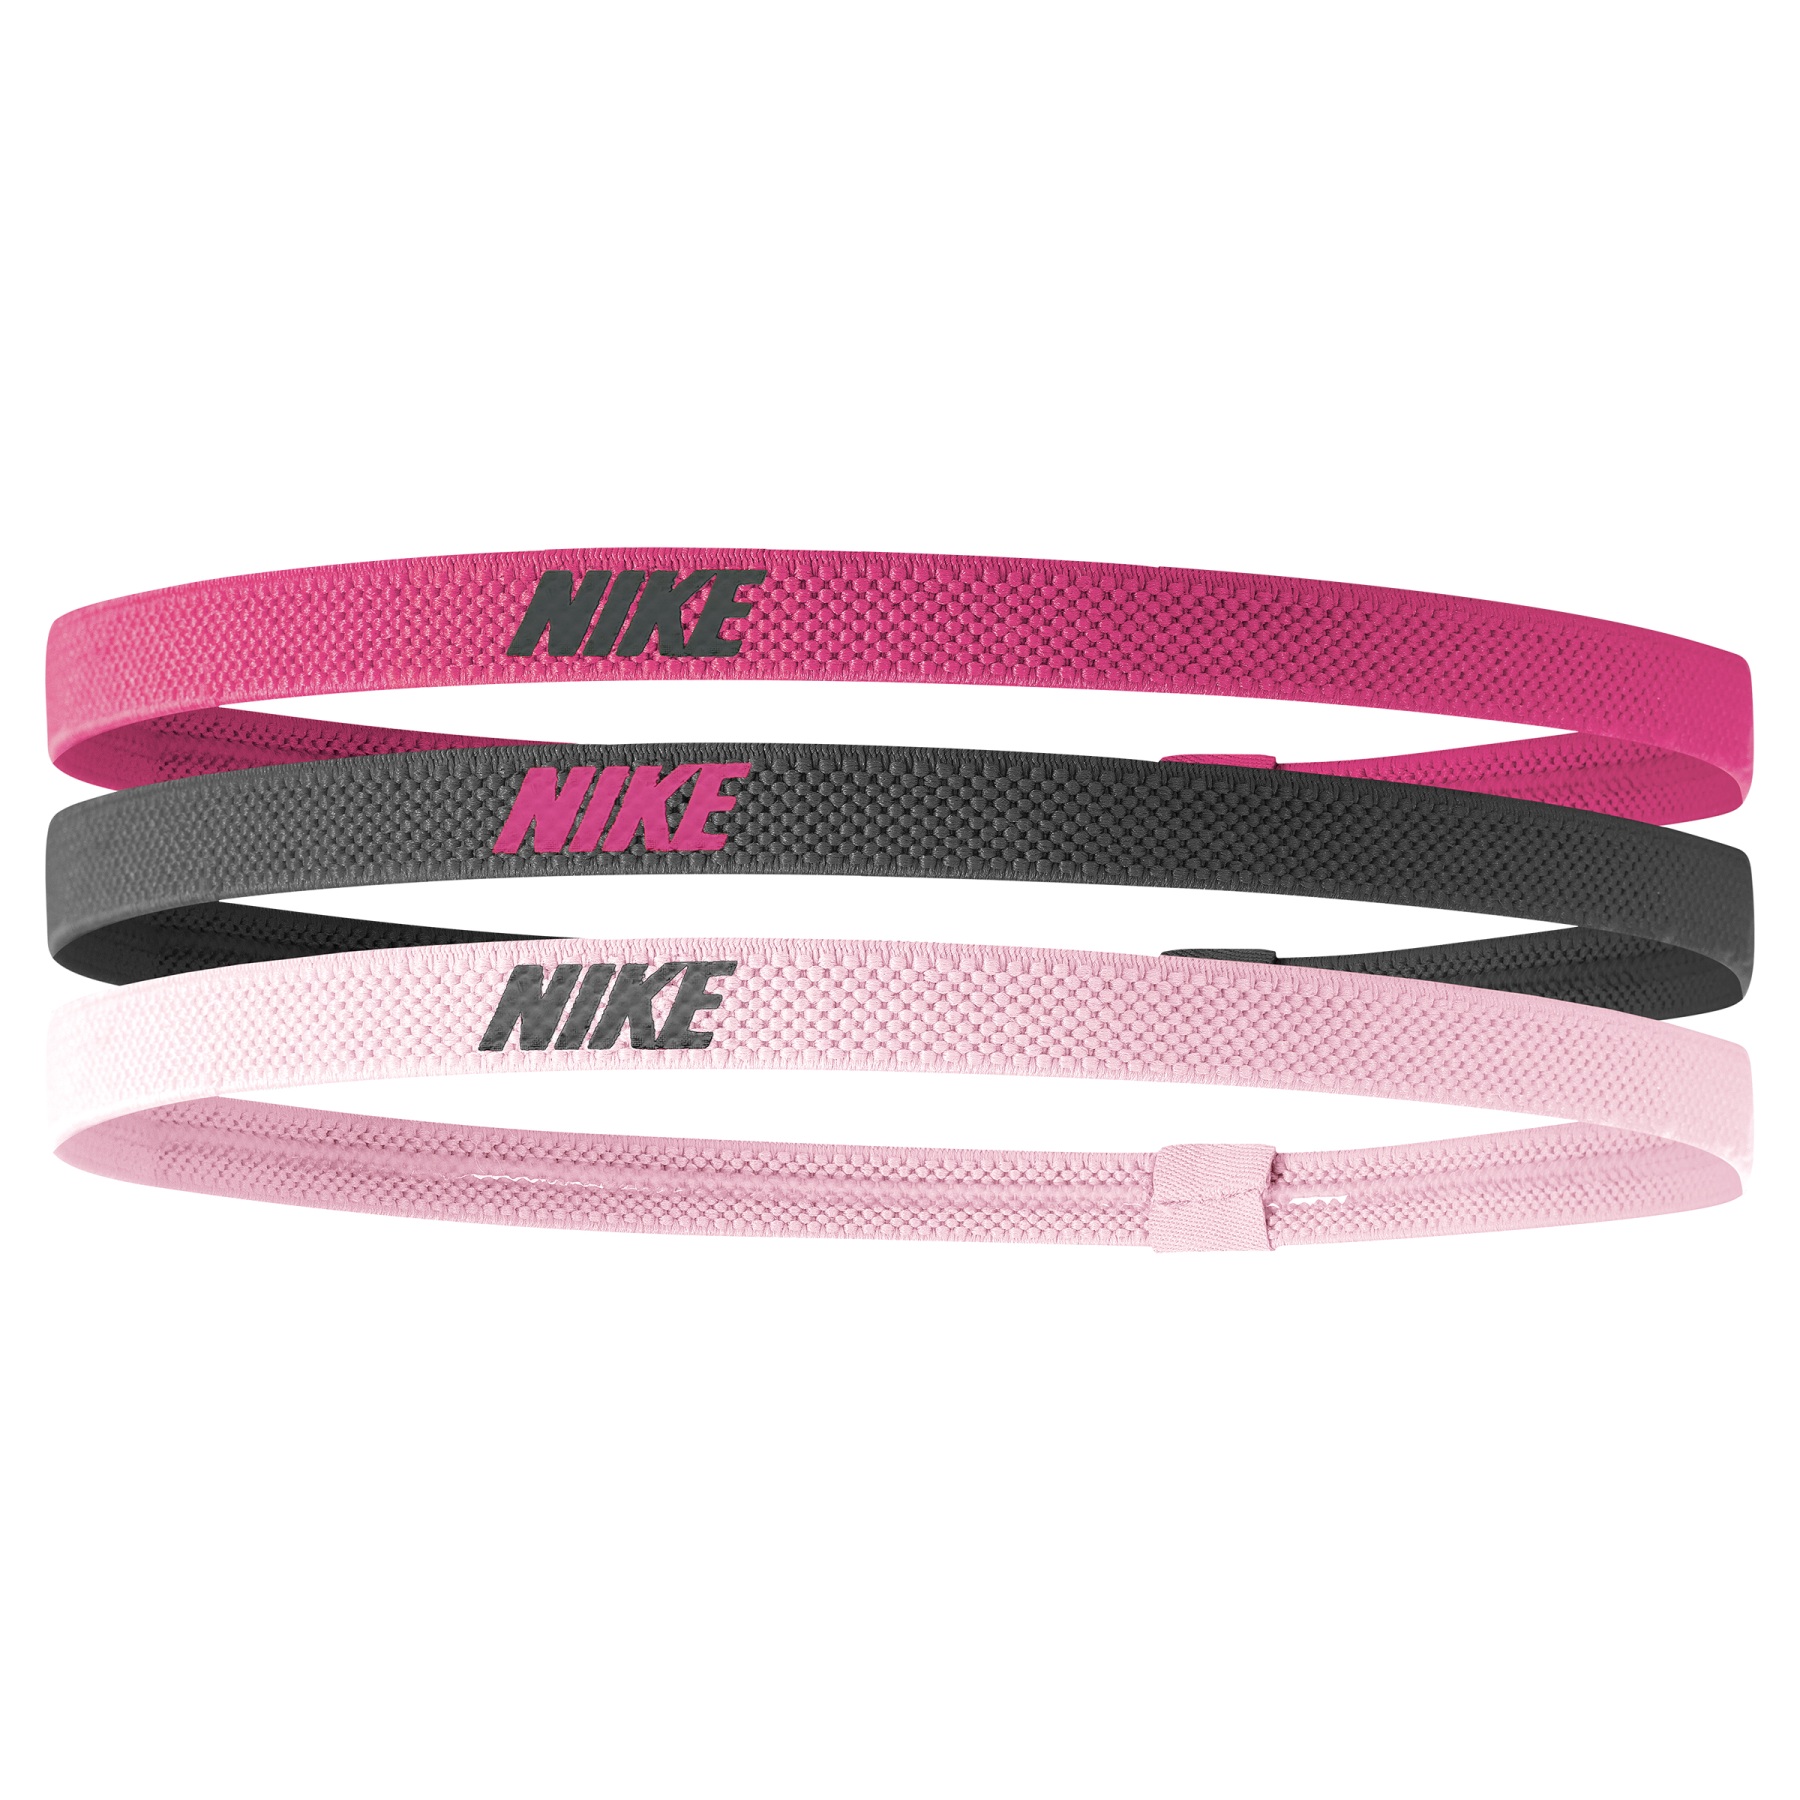 Produktbild von Nike Elastic Stirnbänder 2.0 (3er-Pack) - spark/gridiron/pink glaze 658